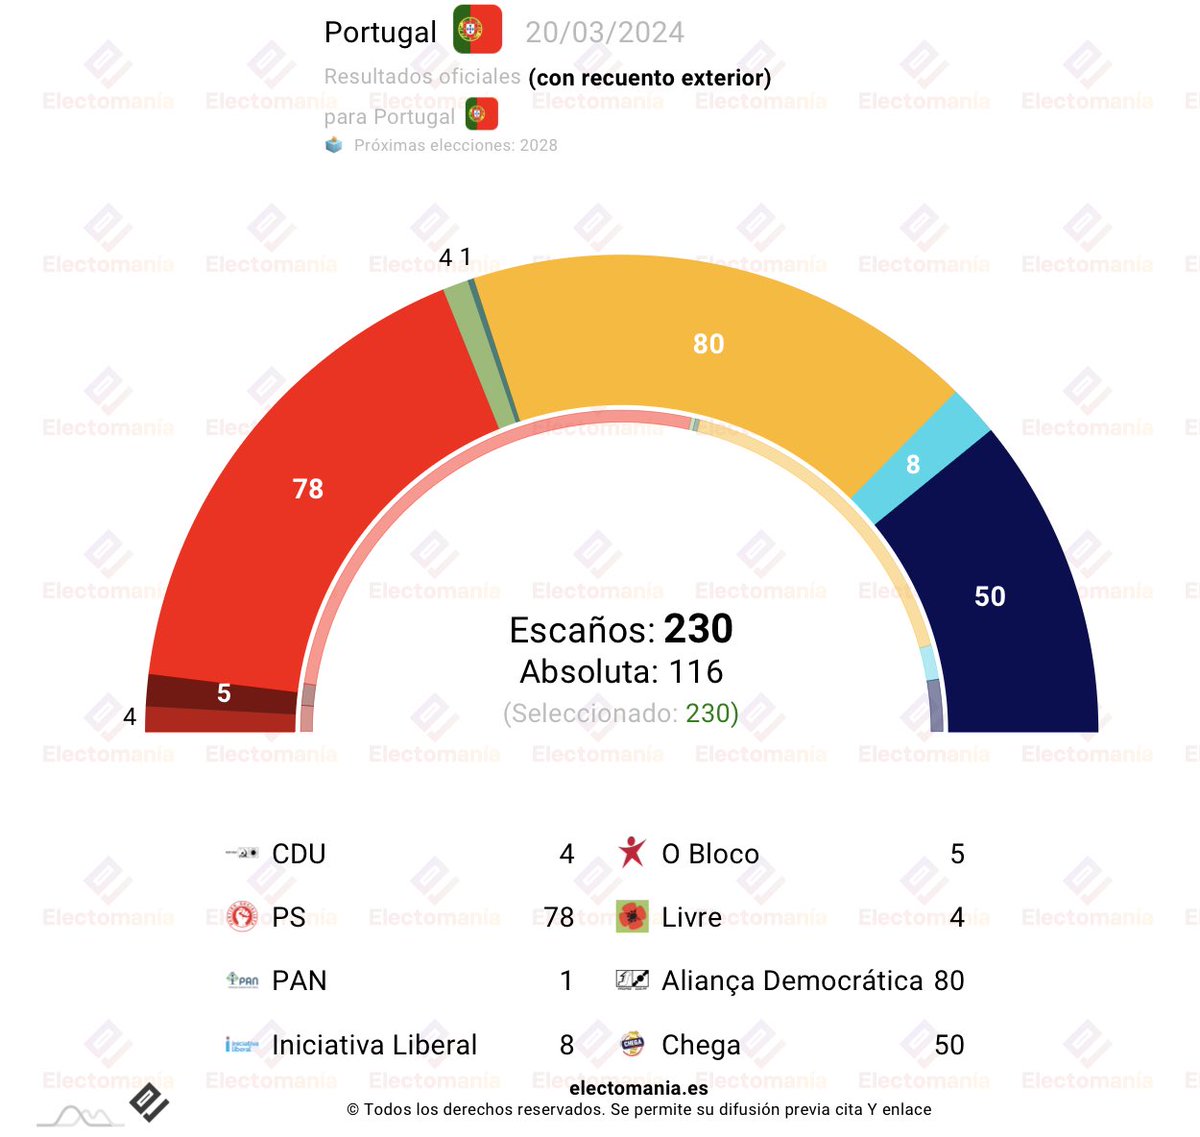 #Portugal 🇵🇹 - Chega ⚫ se impone en el voto exterior y asciende hasta los 50 escaños 🪑. Voto exterior 🌍 (85% escr): ⚫ Chega 2 🟠 AD 1 🔴 PS 1 Total 🪑: 🟠 AD: 80 🔴 PS: 78 ⚫ Chega: 50 ℹ️ IL: 8 ✊ Bloco: 5 🌺 Livre: 4 🌻☭ CDU: 4 🕊️ PAN: 1 ↘️ electomania.es/portugal-chega…